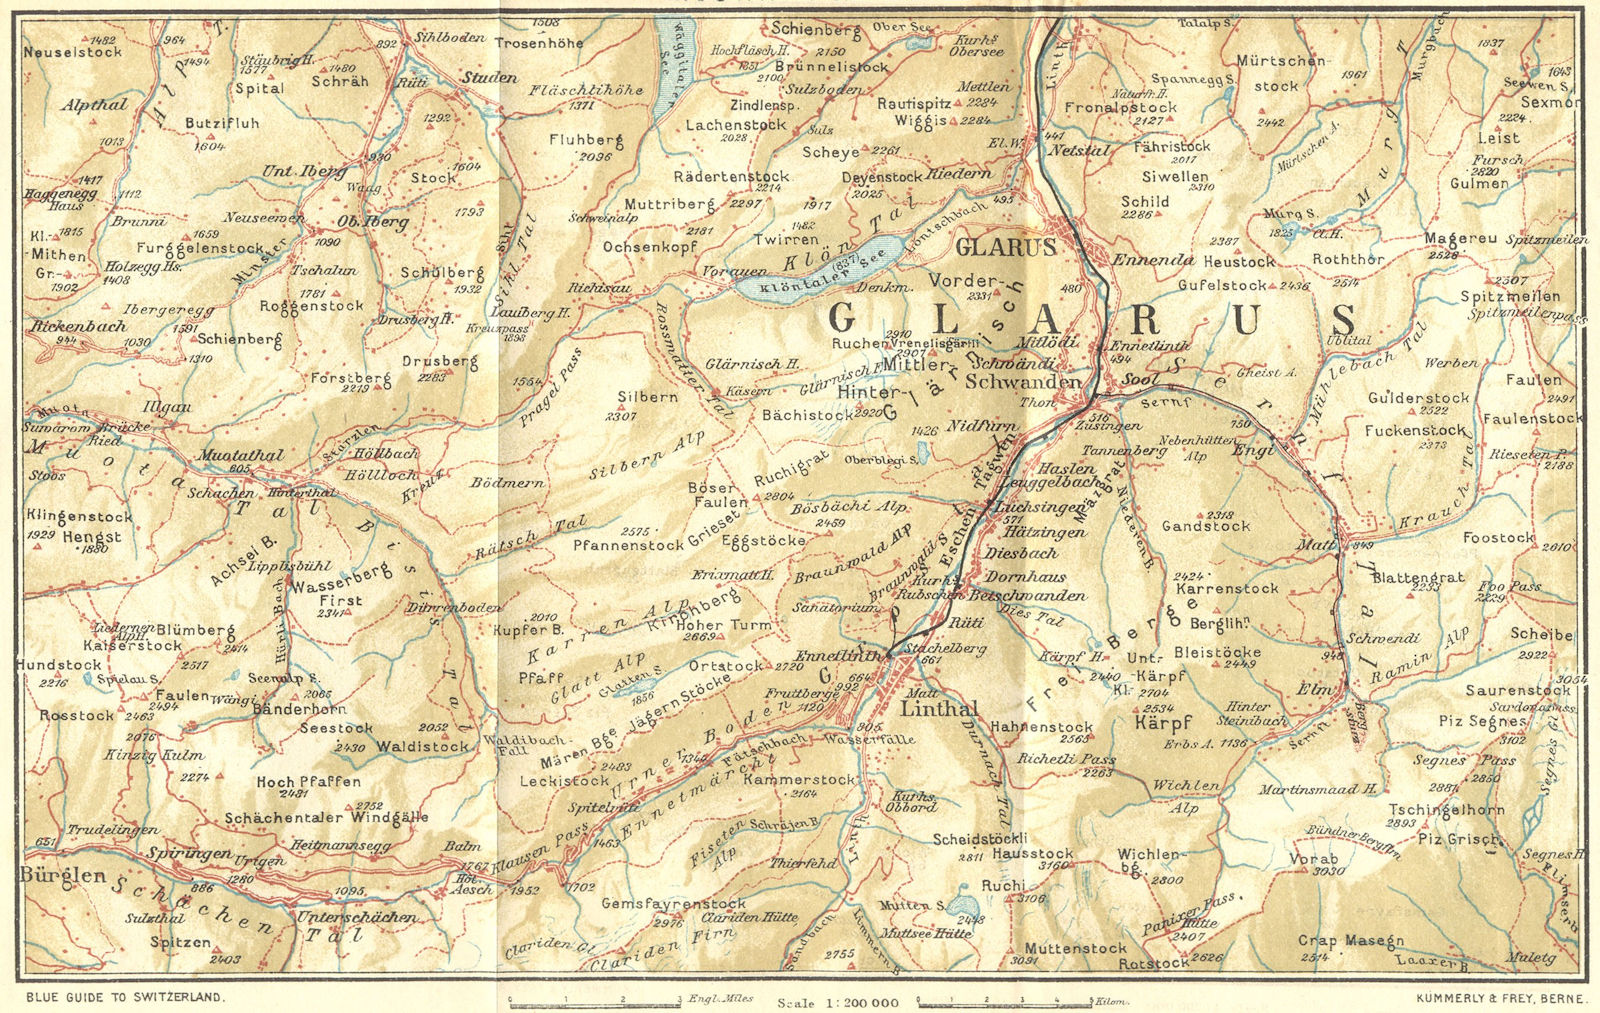 SWITZERLAND. Muotatal-Glarus 1923 old antique vintage map plan chart